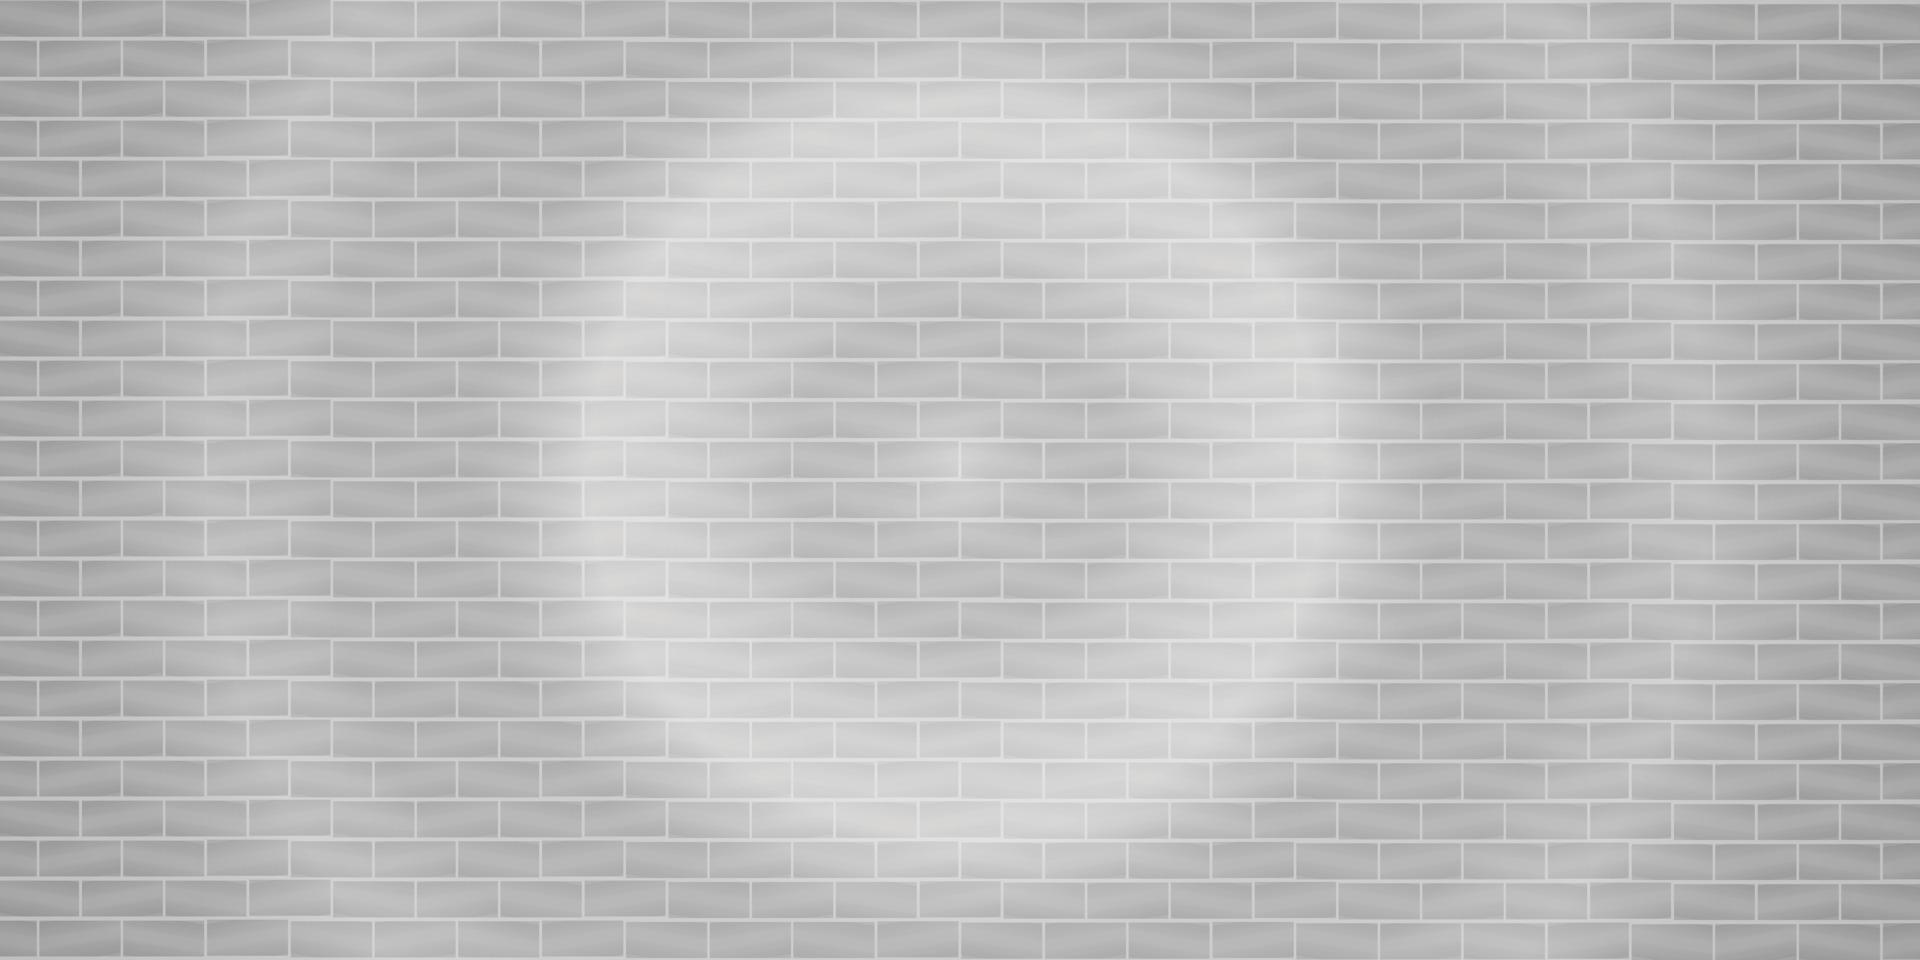 lumière grise flare mur de briques fond abstrait texture papier peint toile de fond modèle illustration vectorielle continue vecteur